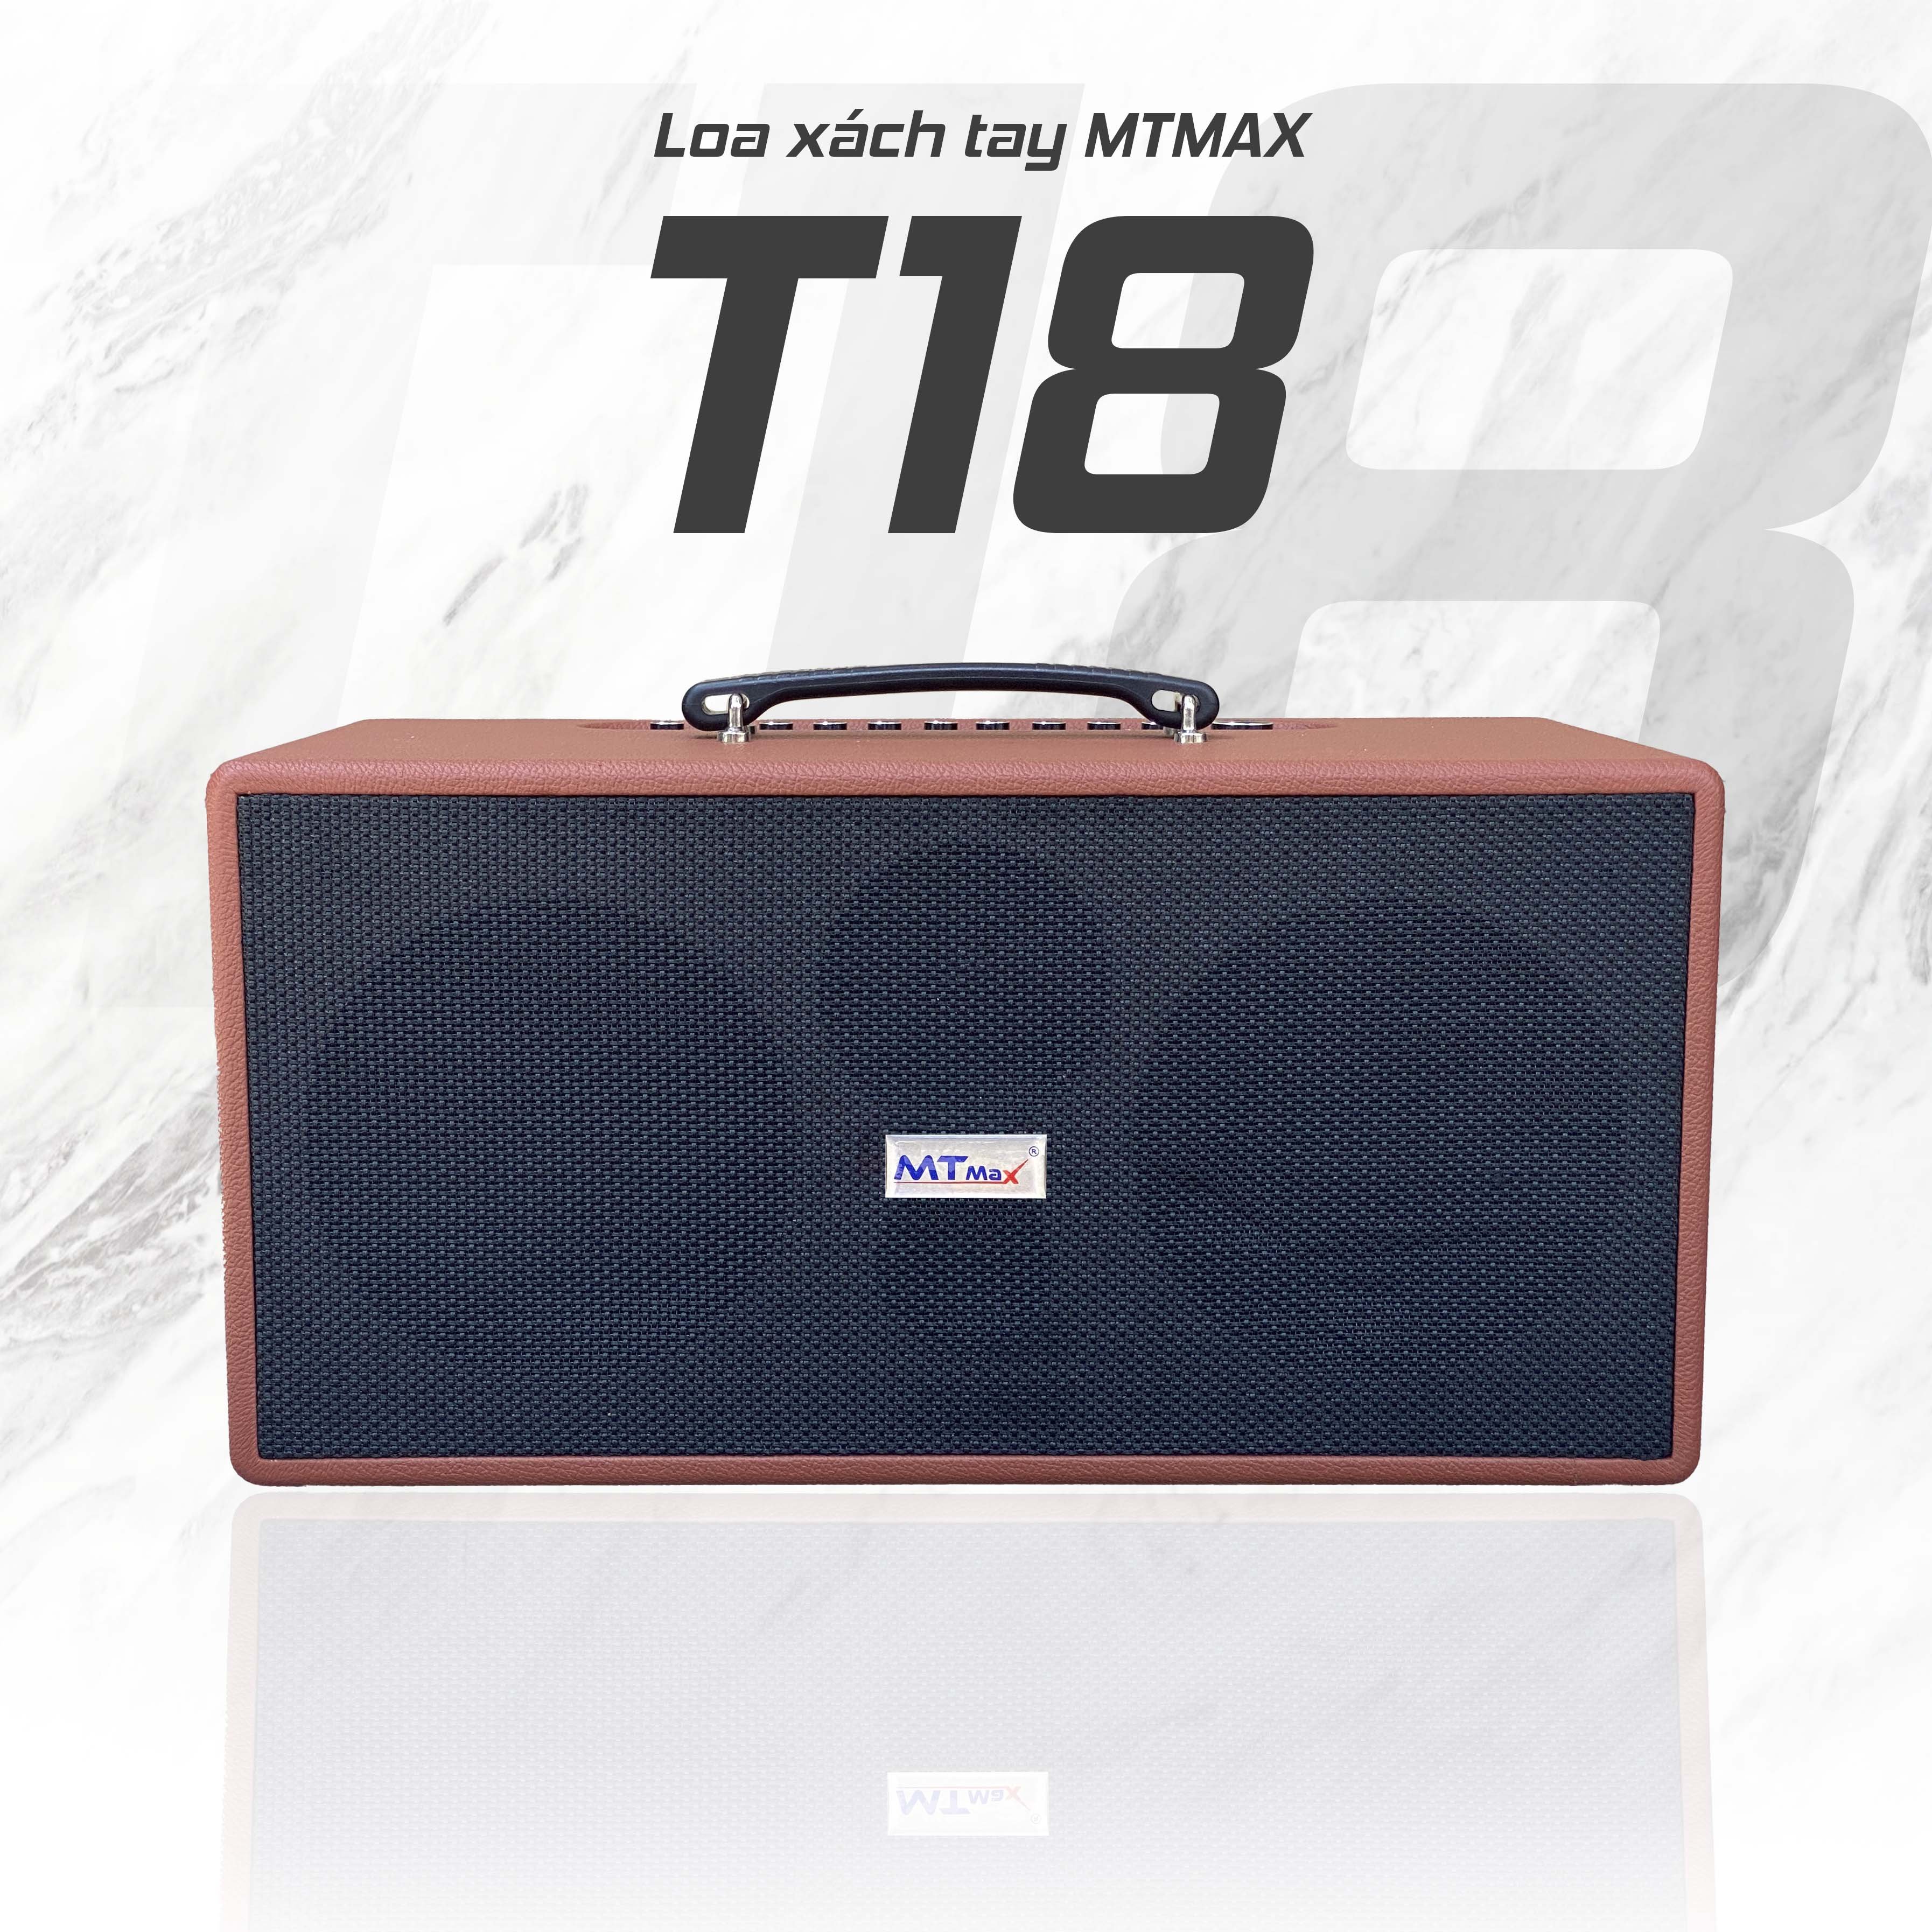 Loa di động xách tay MTMAX T18 phiên bản nâng cấp được yêu thích cho các tín đồ yêu ca nhạc